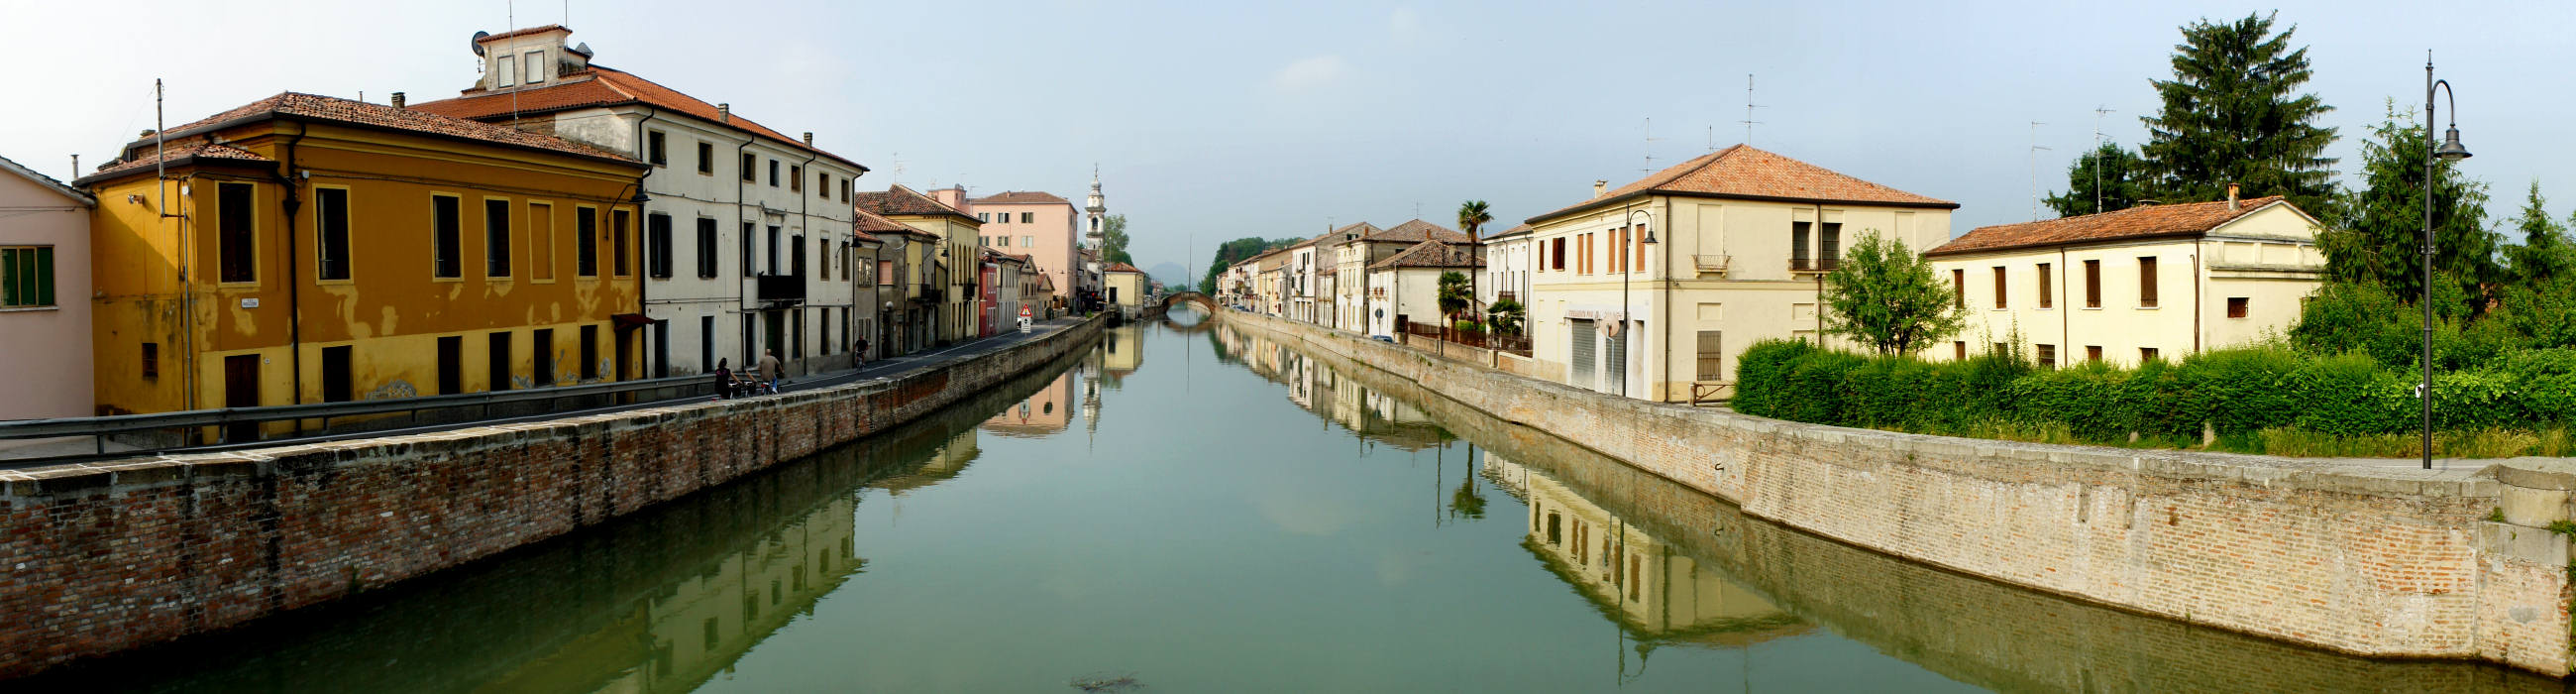 Canale Battaglia a Battaglia Terme